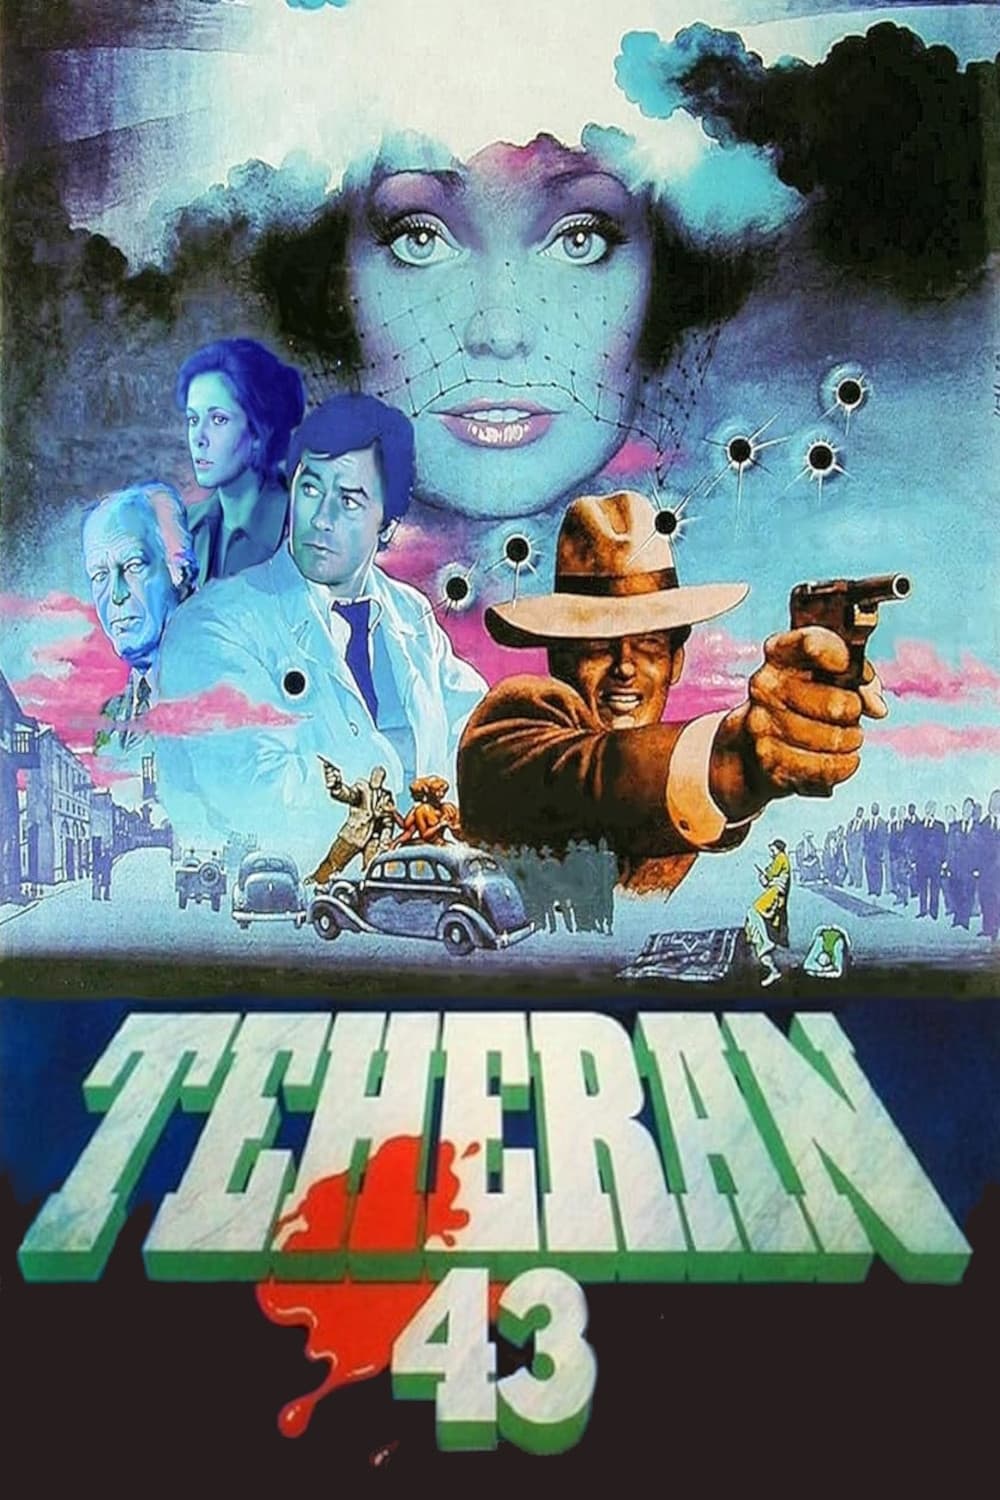 Téhéran 43, nid d'espions (1981)